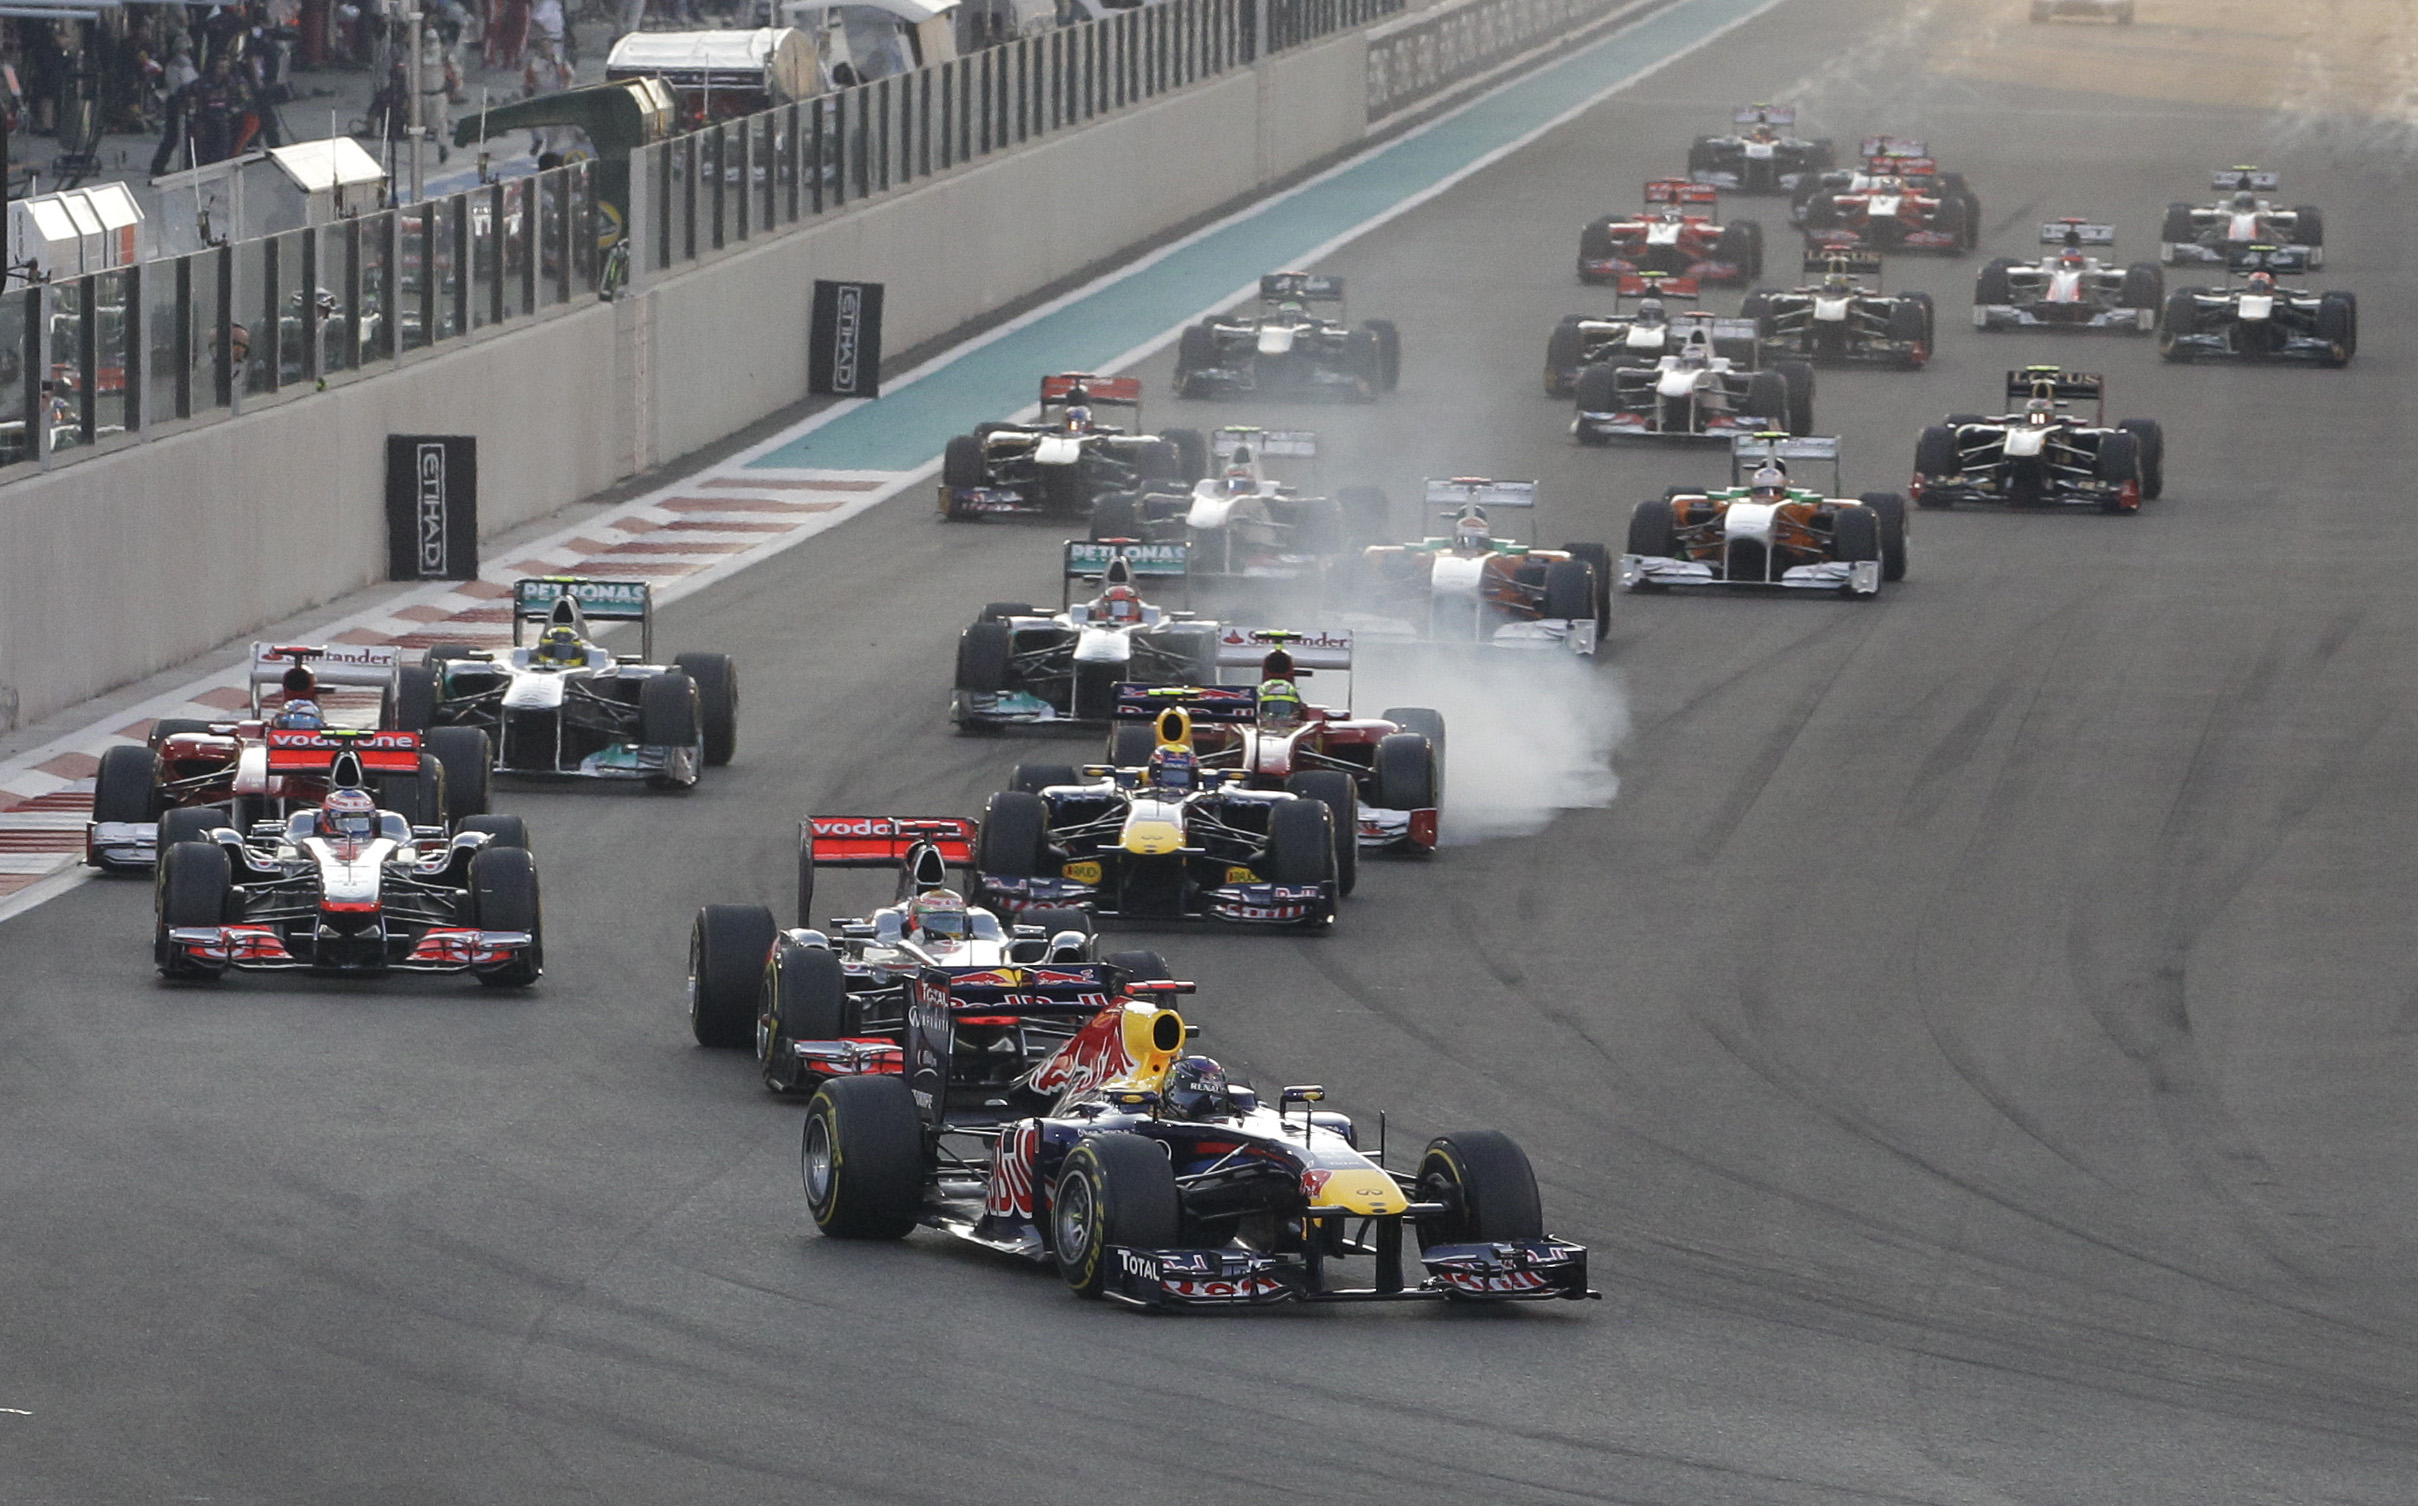 Nigel Mansell, Mark Webber, Fernando Alonso, Abu Dhabi, Lewis Hamilton, Jenson Button, Red Bull, Formel 1, Sebastian Vettel